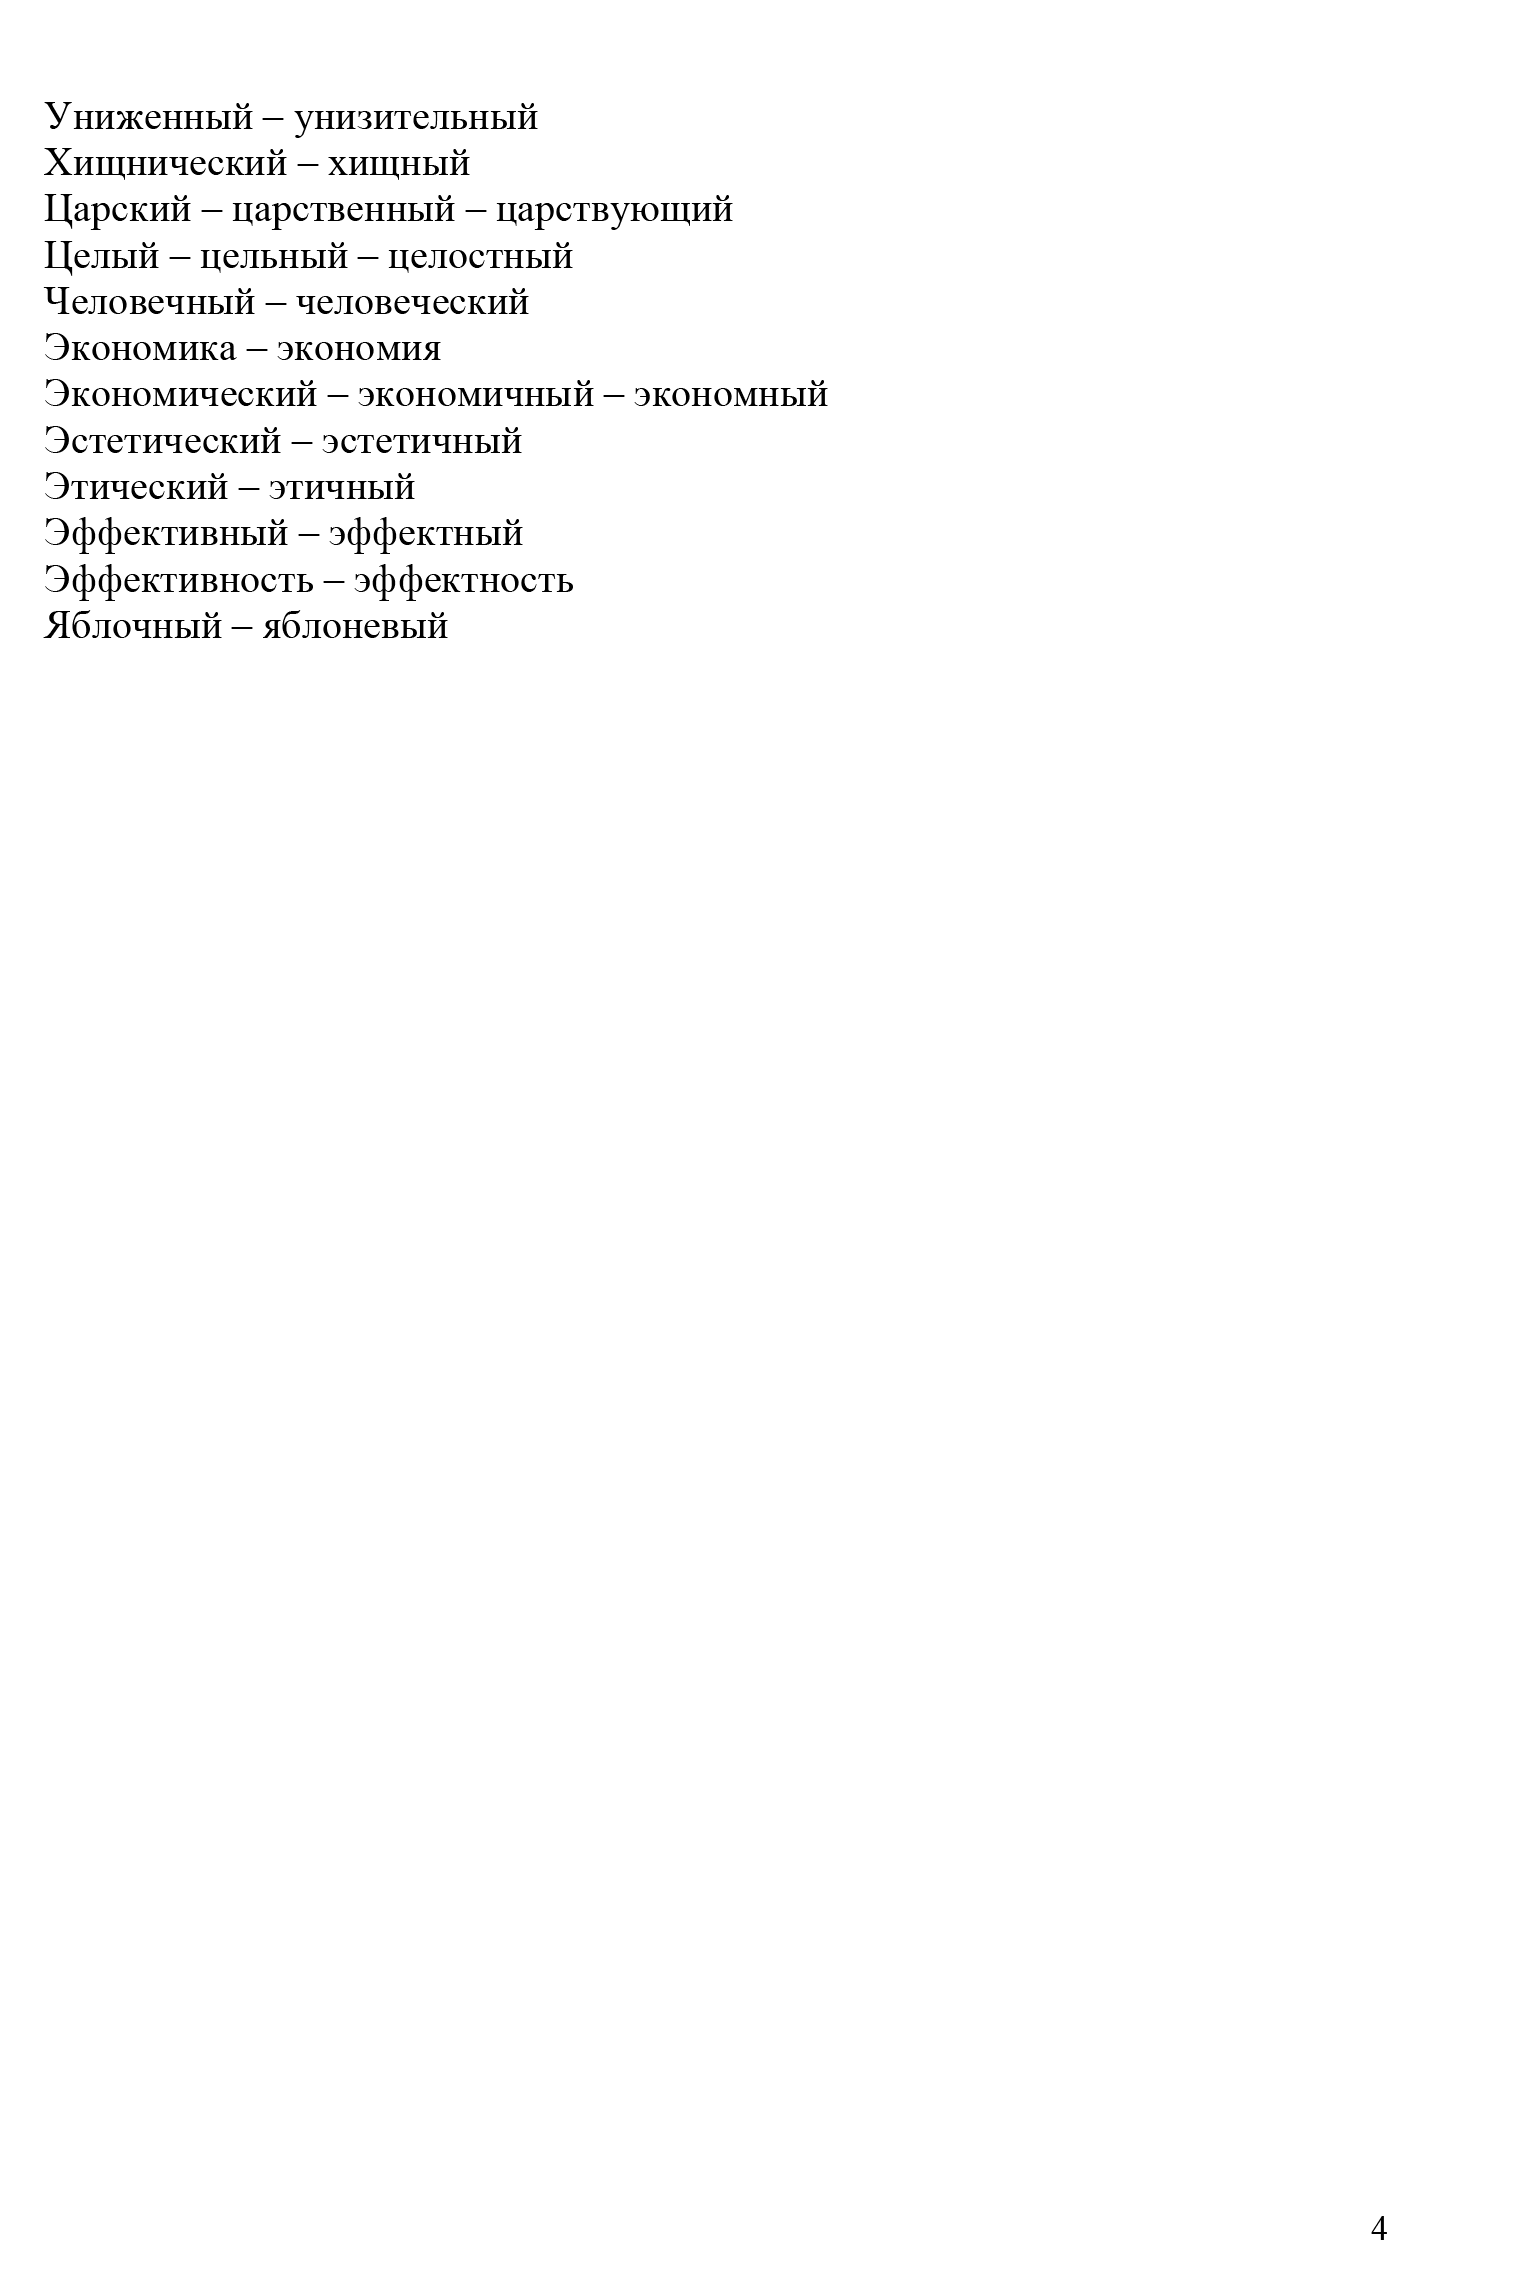 Словарь паронимов от ФИПИ. Источник: fipi.ru